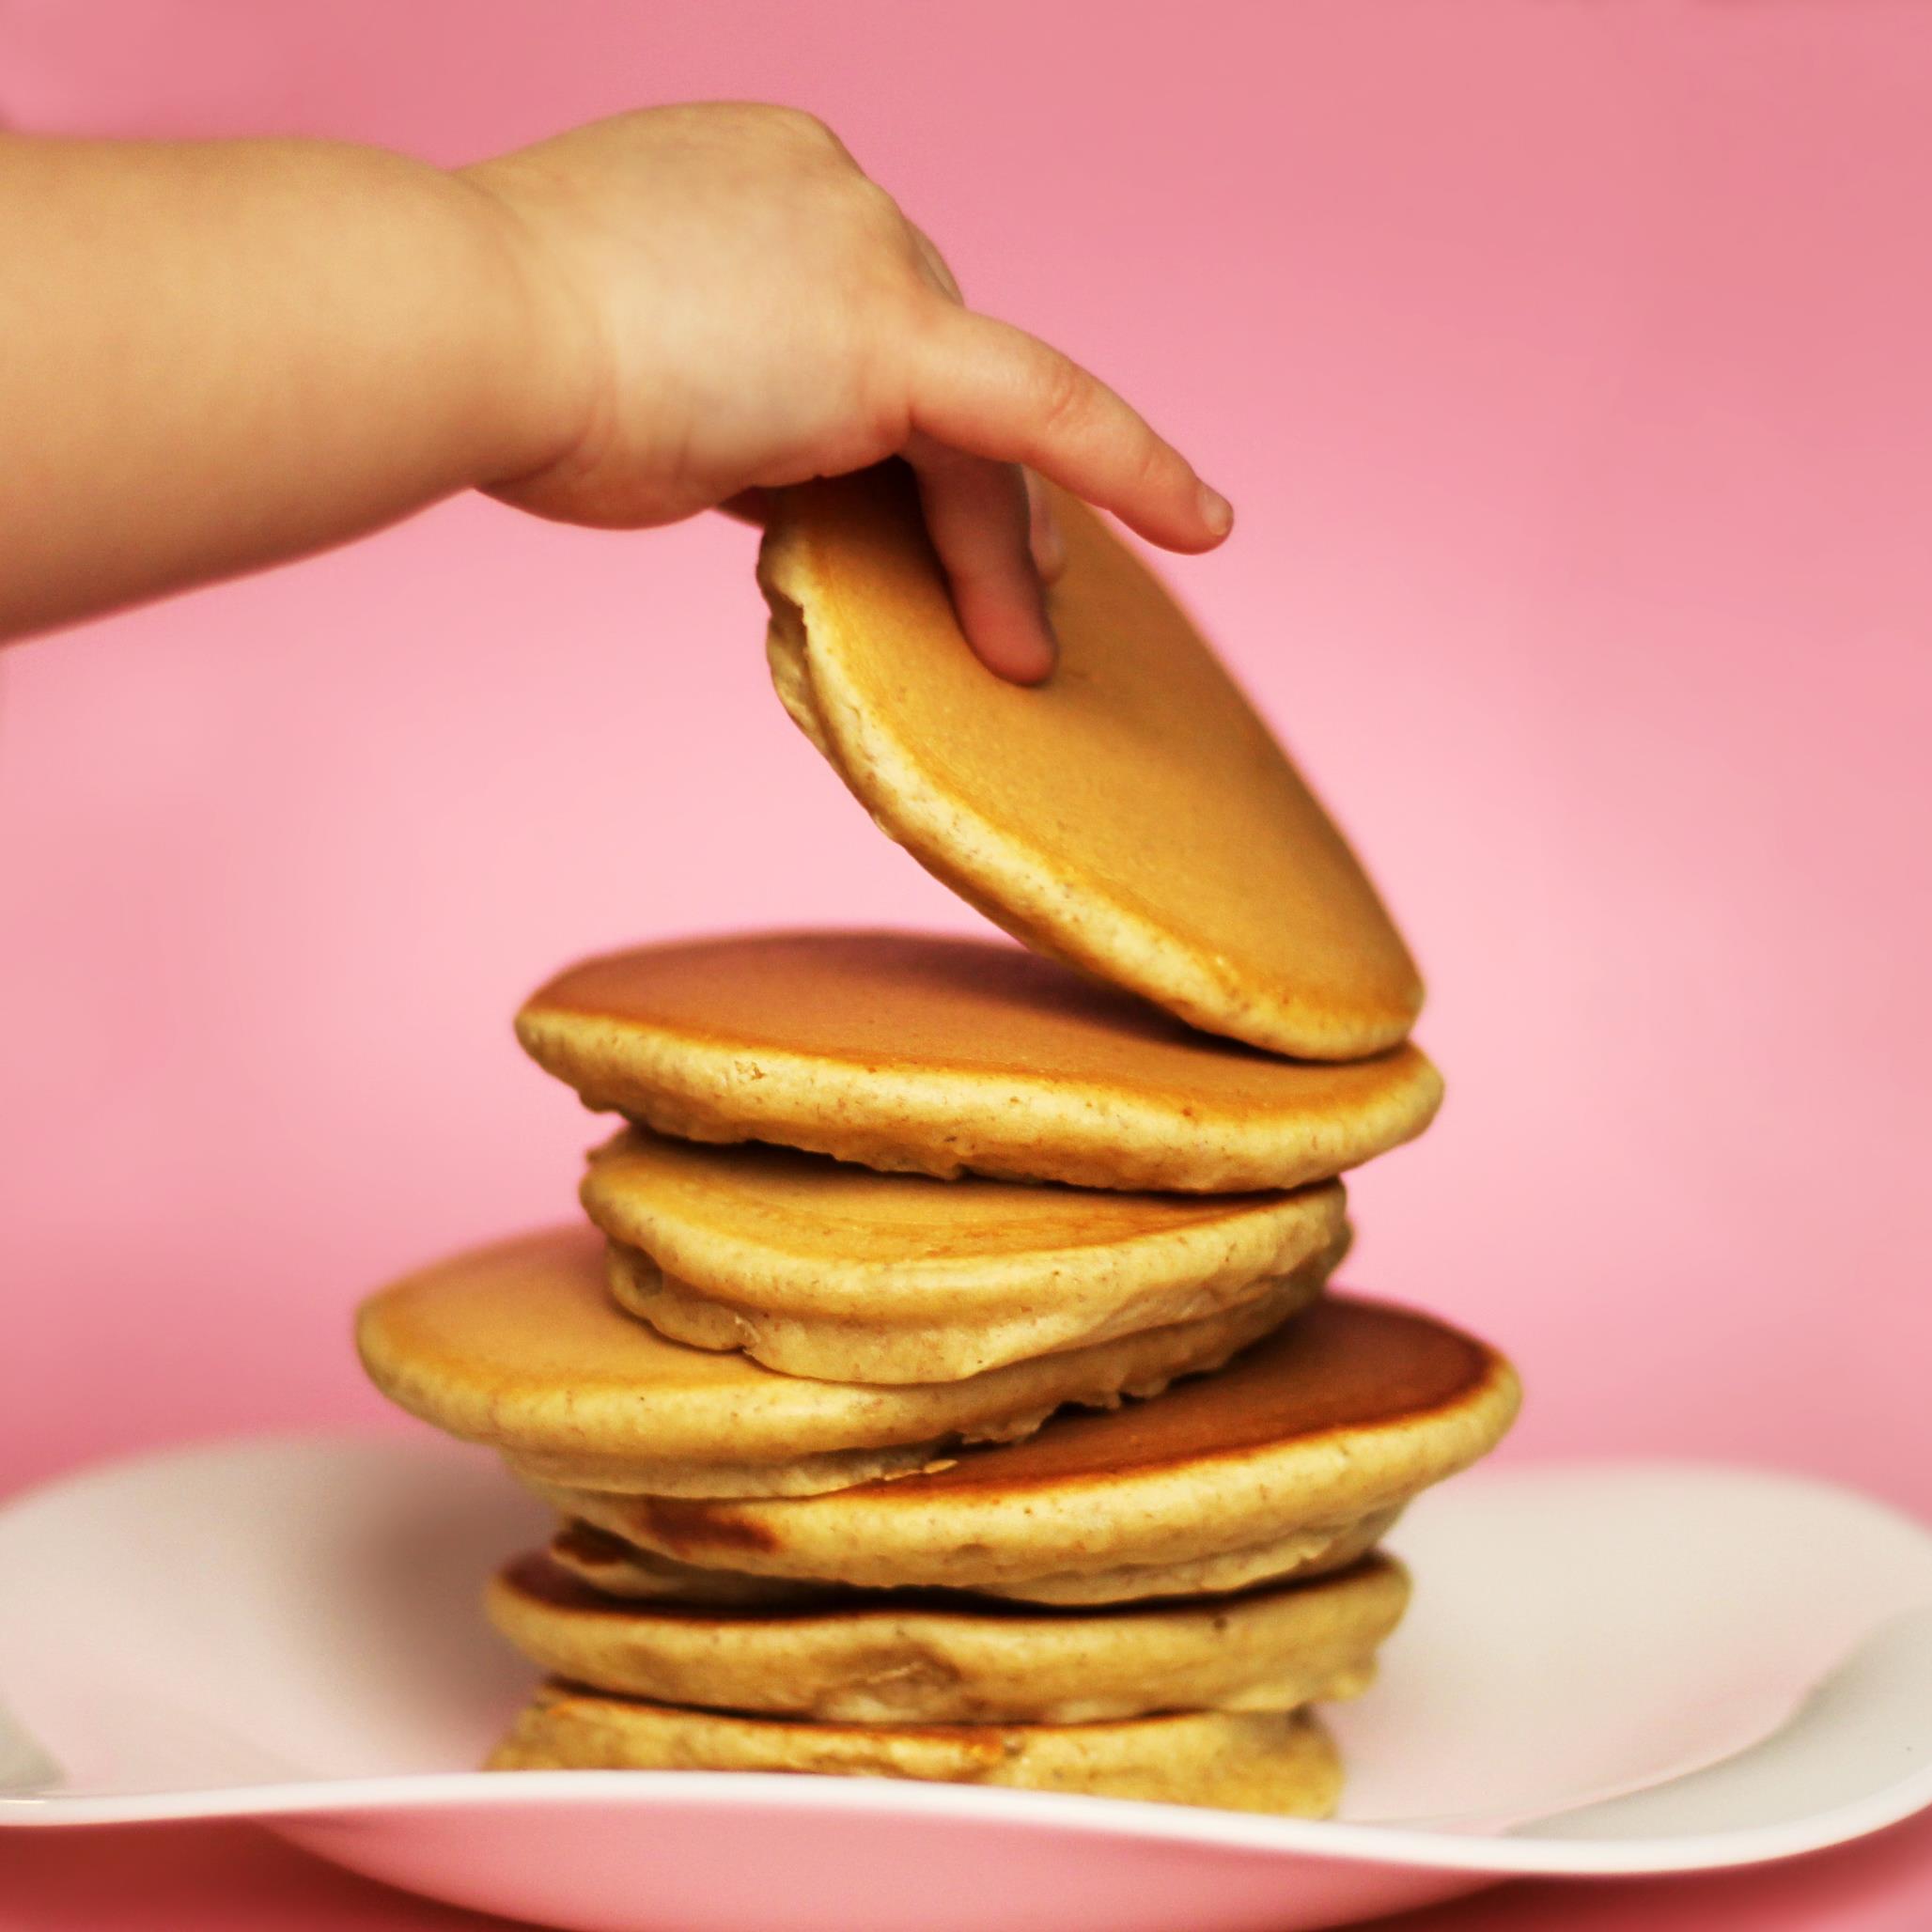 Trouvaille du Canada : la machine à pancakes ! - Lecture, cuisine